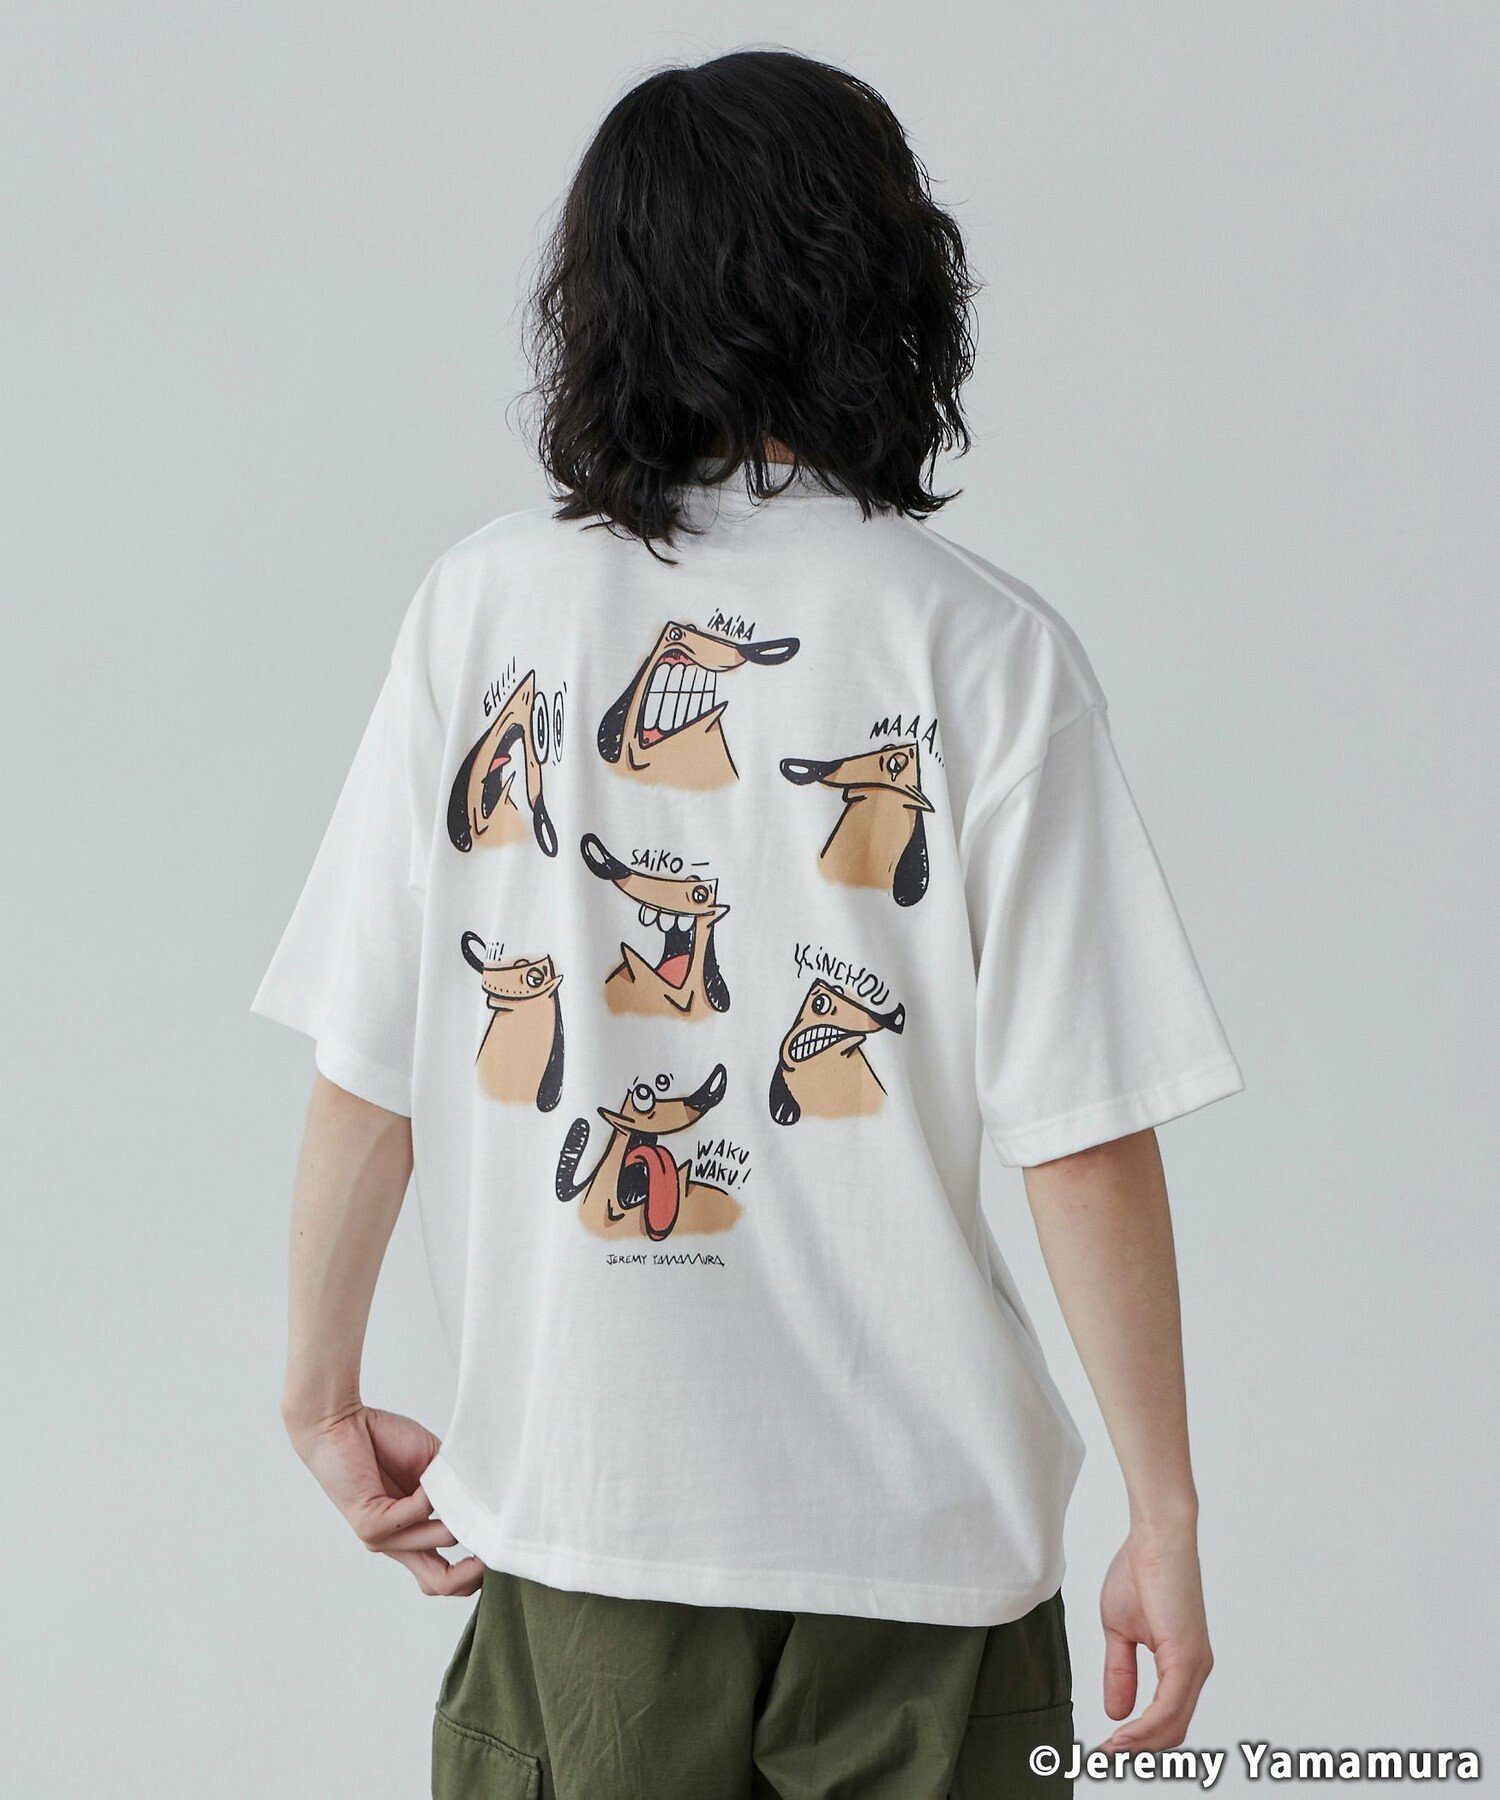 Jeremy Yamamura*コーエン グラフィックプリントTシャツ